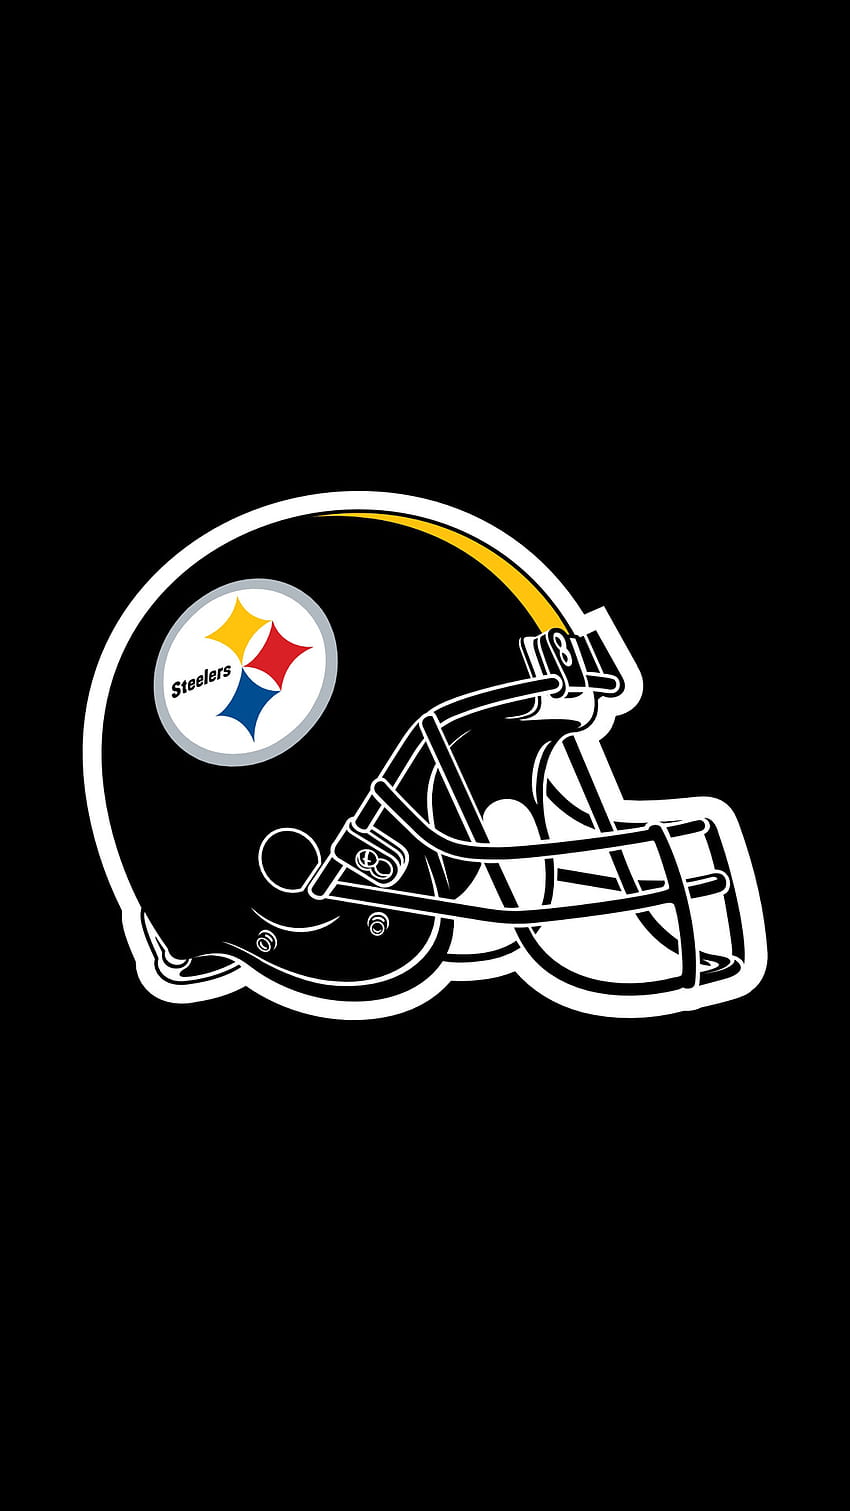 Steelers - HD wallpaper | Pxfuel